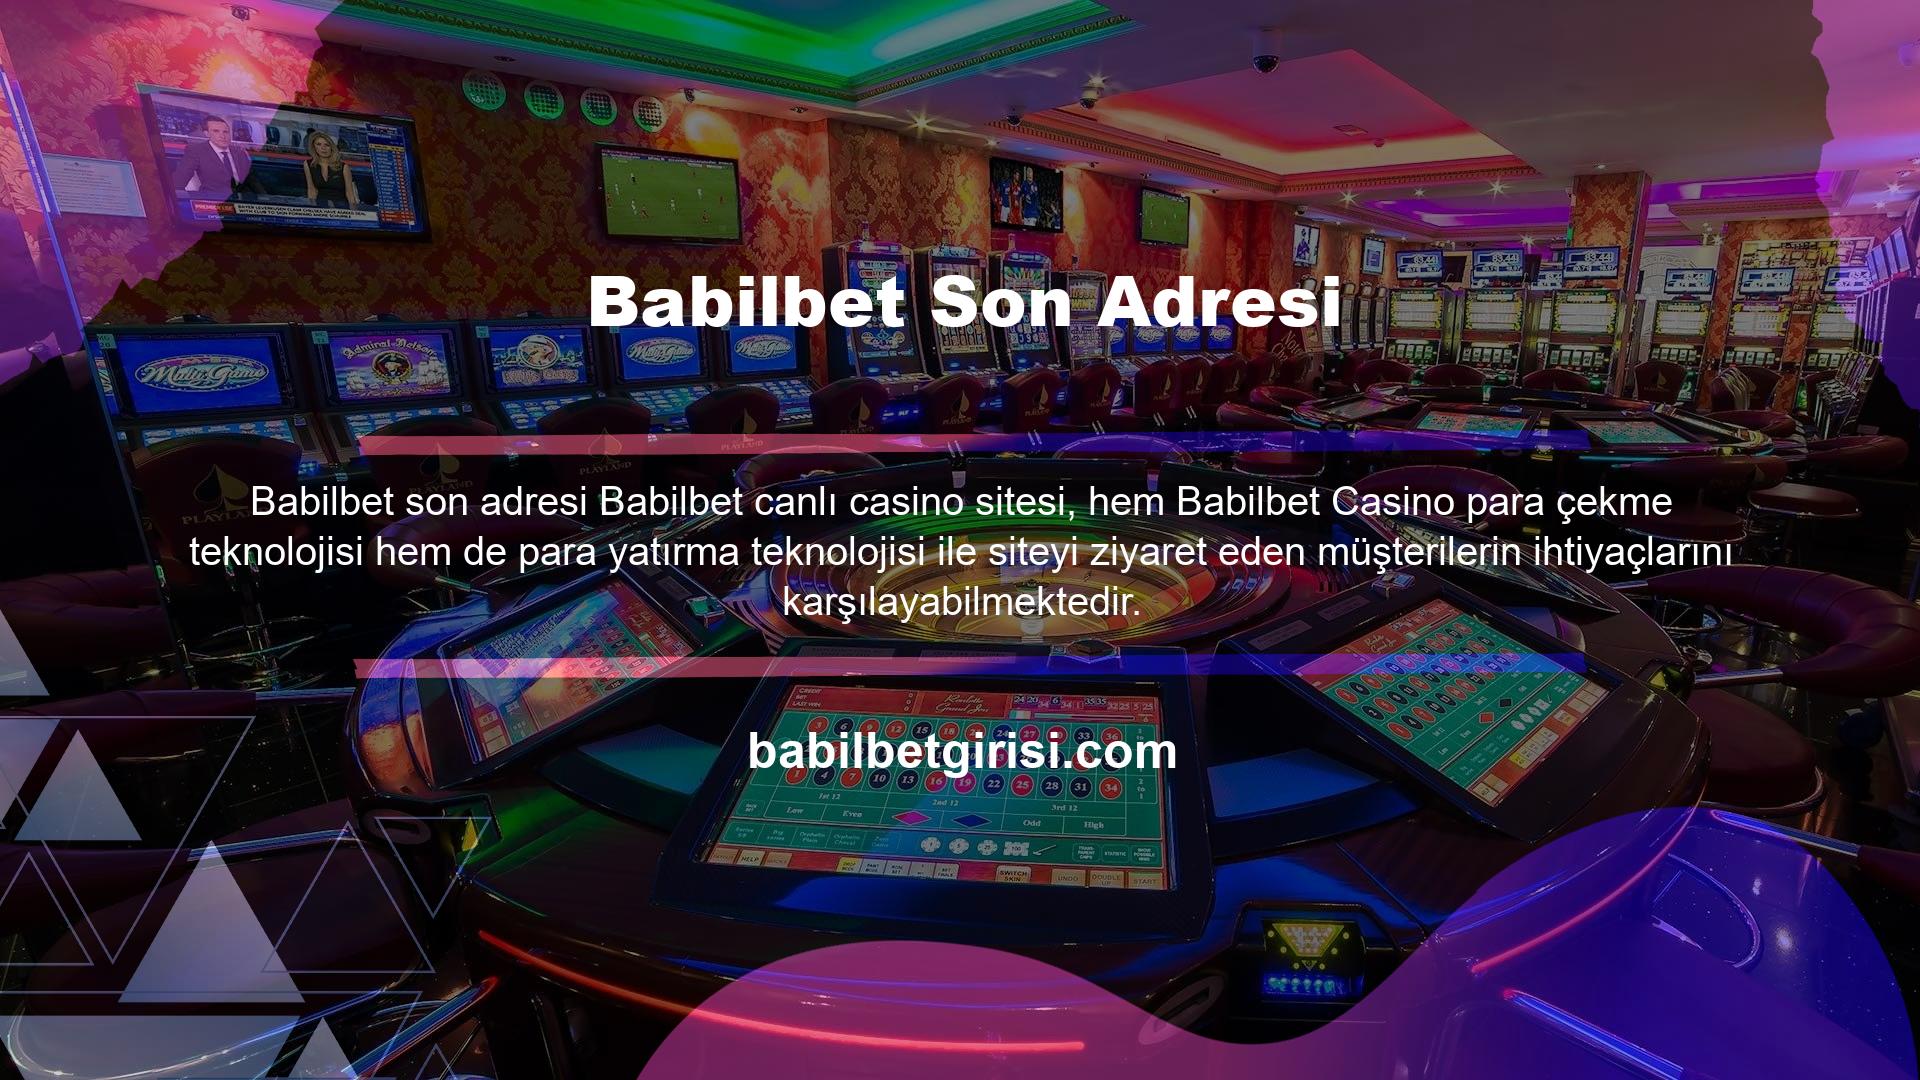 Babilbet Nasıl Para YatırılırCanlı casino kullanıcıları için en popüler sitelerden biri olan Babilbet Casino, kayıt işlemi sırasında çeşitli para yatırma seçenekleri sunar